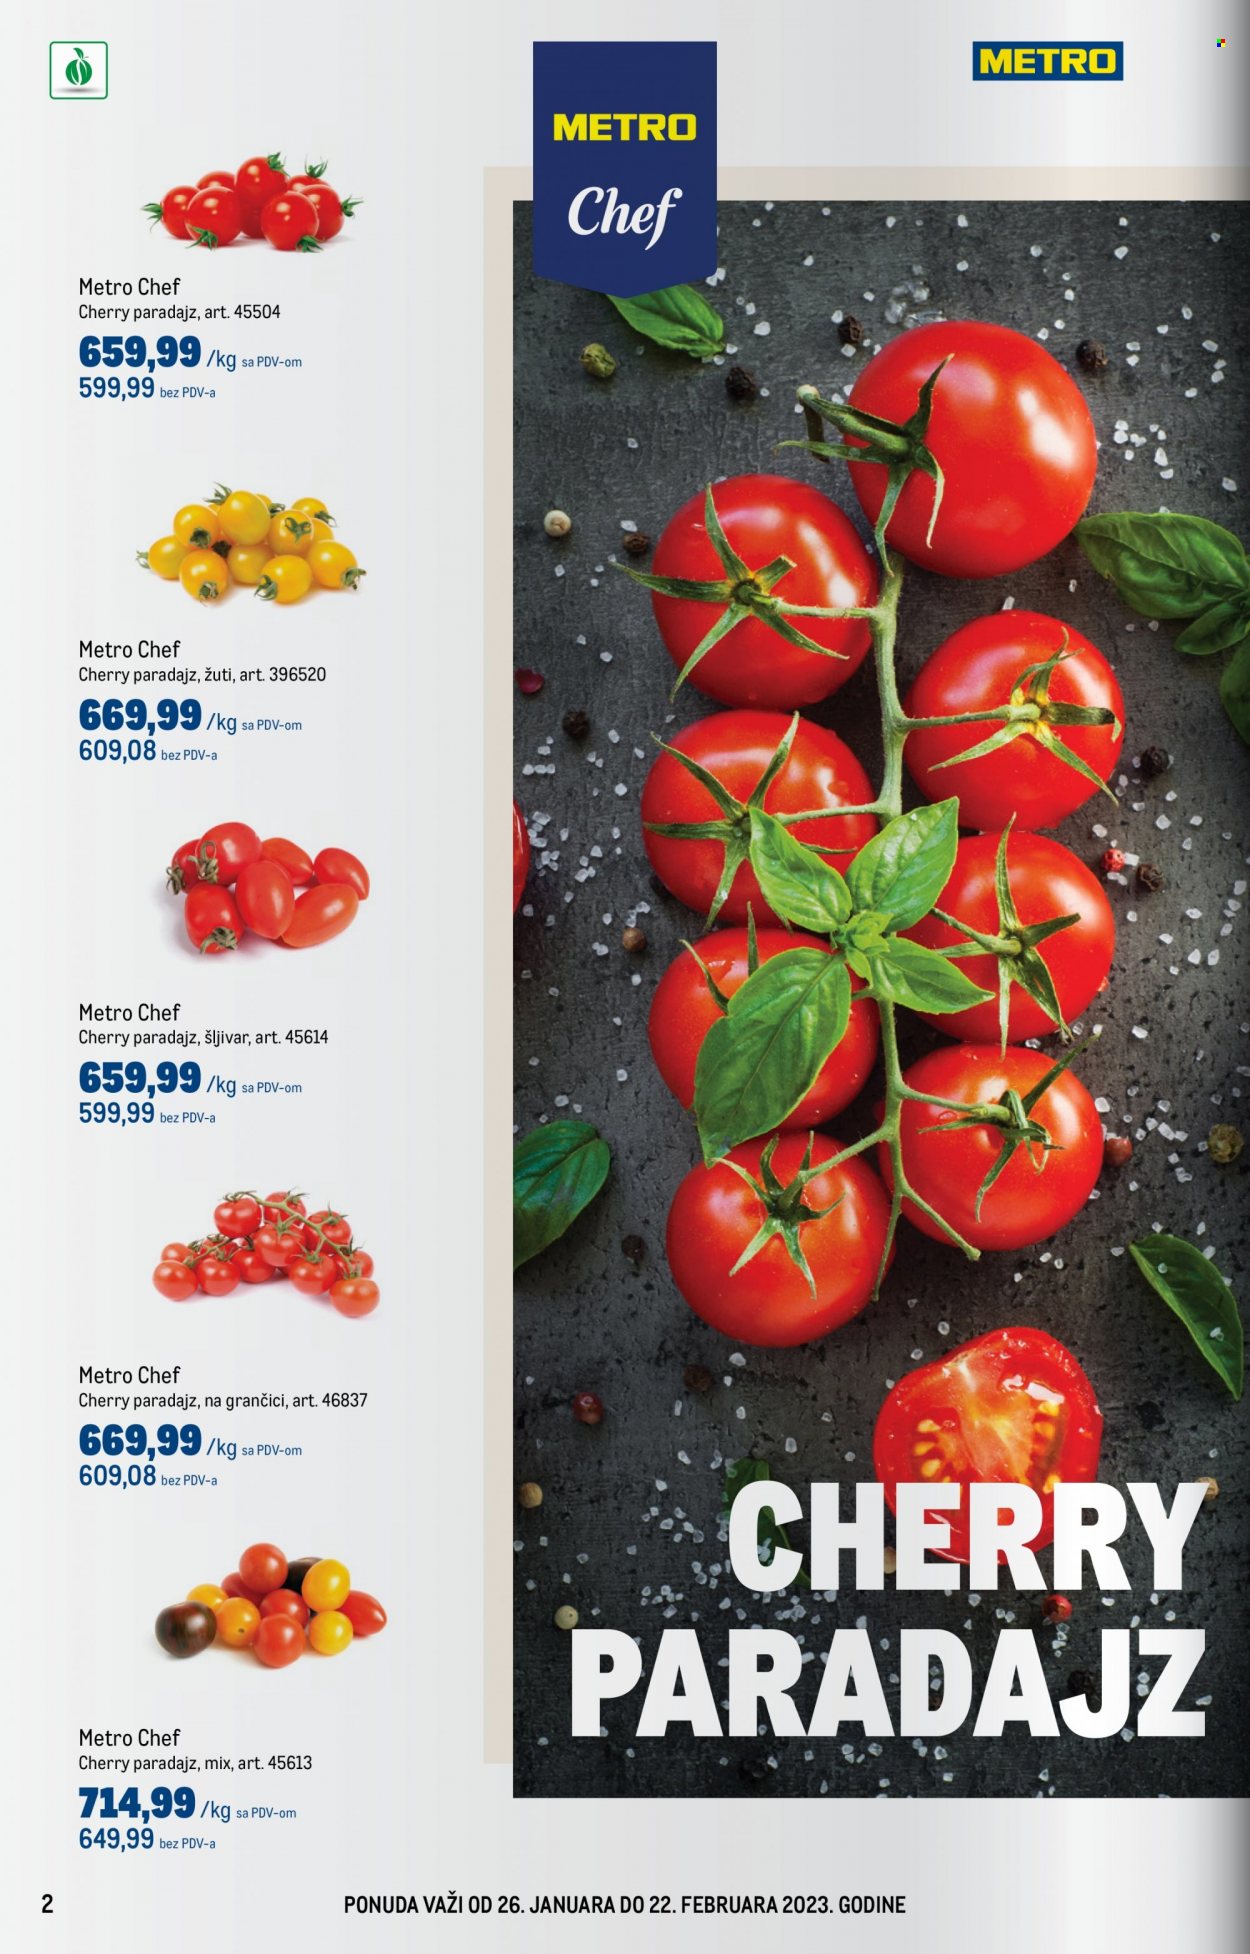 thumbnail - Metro katalog - 26.01.2023 - 22.02.2023 - Proizvodi na akciji - Metro Chef, paradajz, paradajz cherry. Stranica 2.